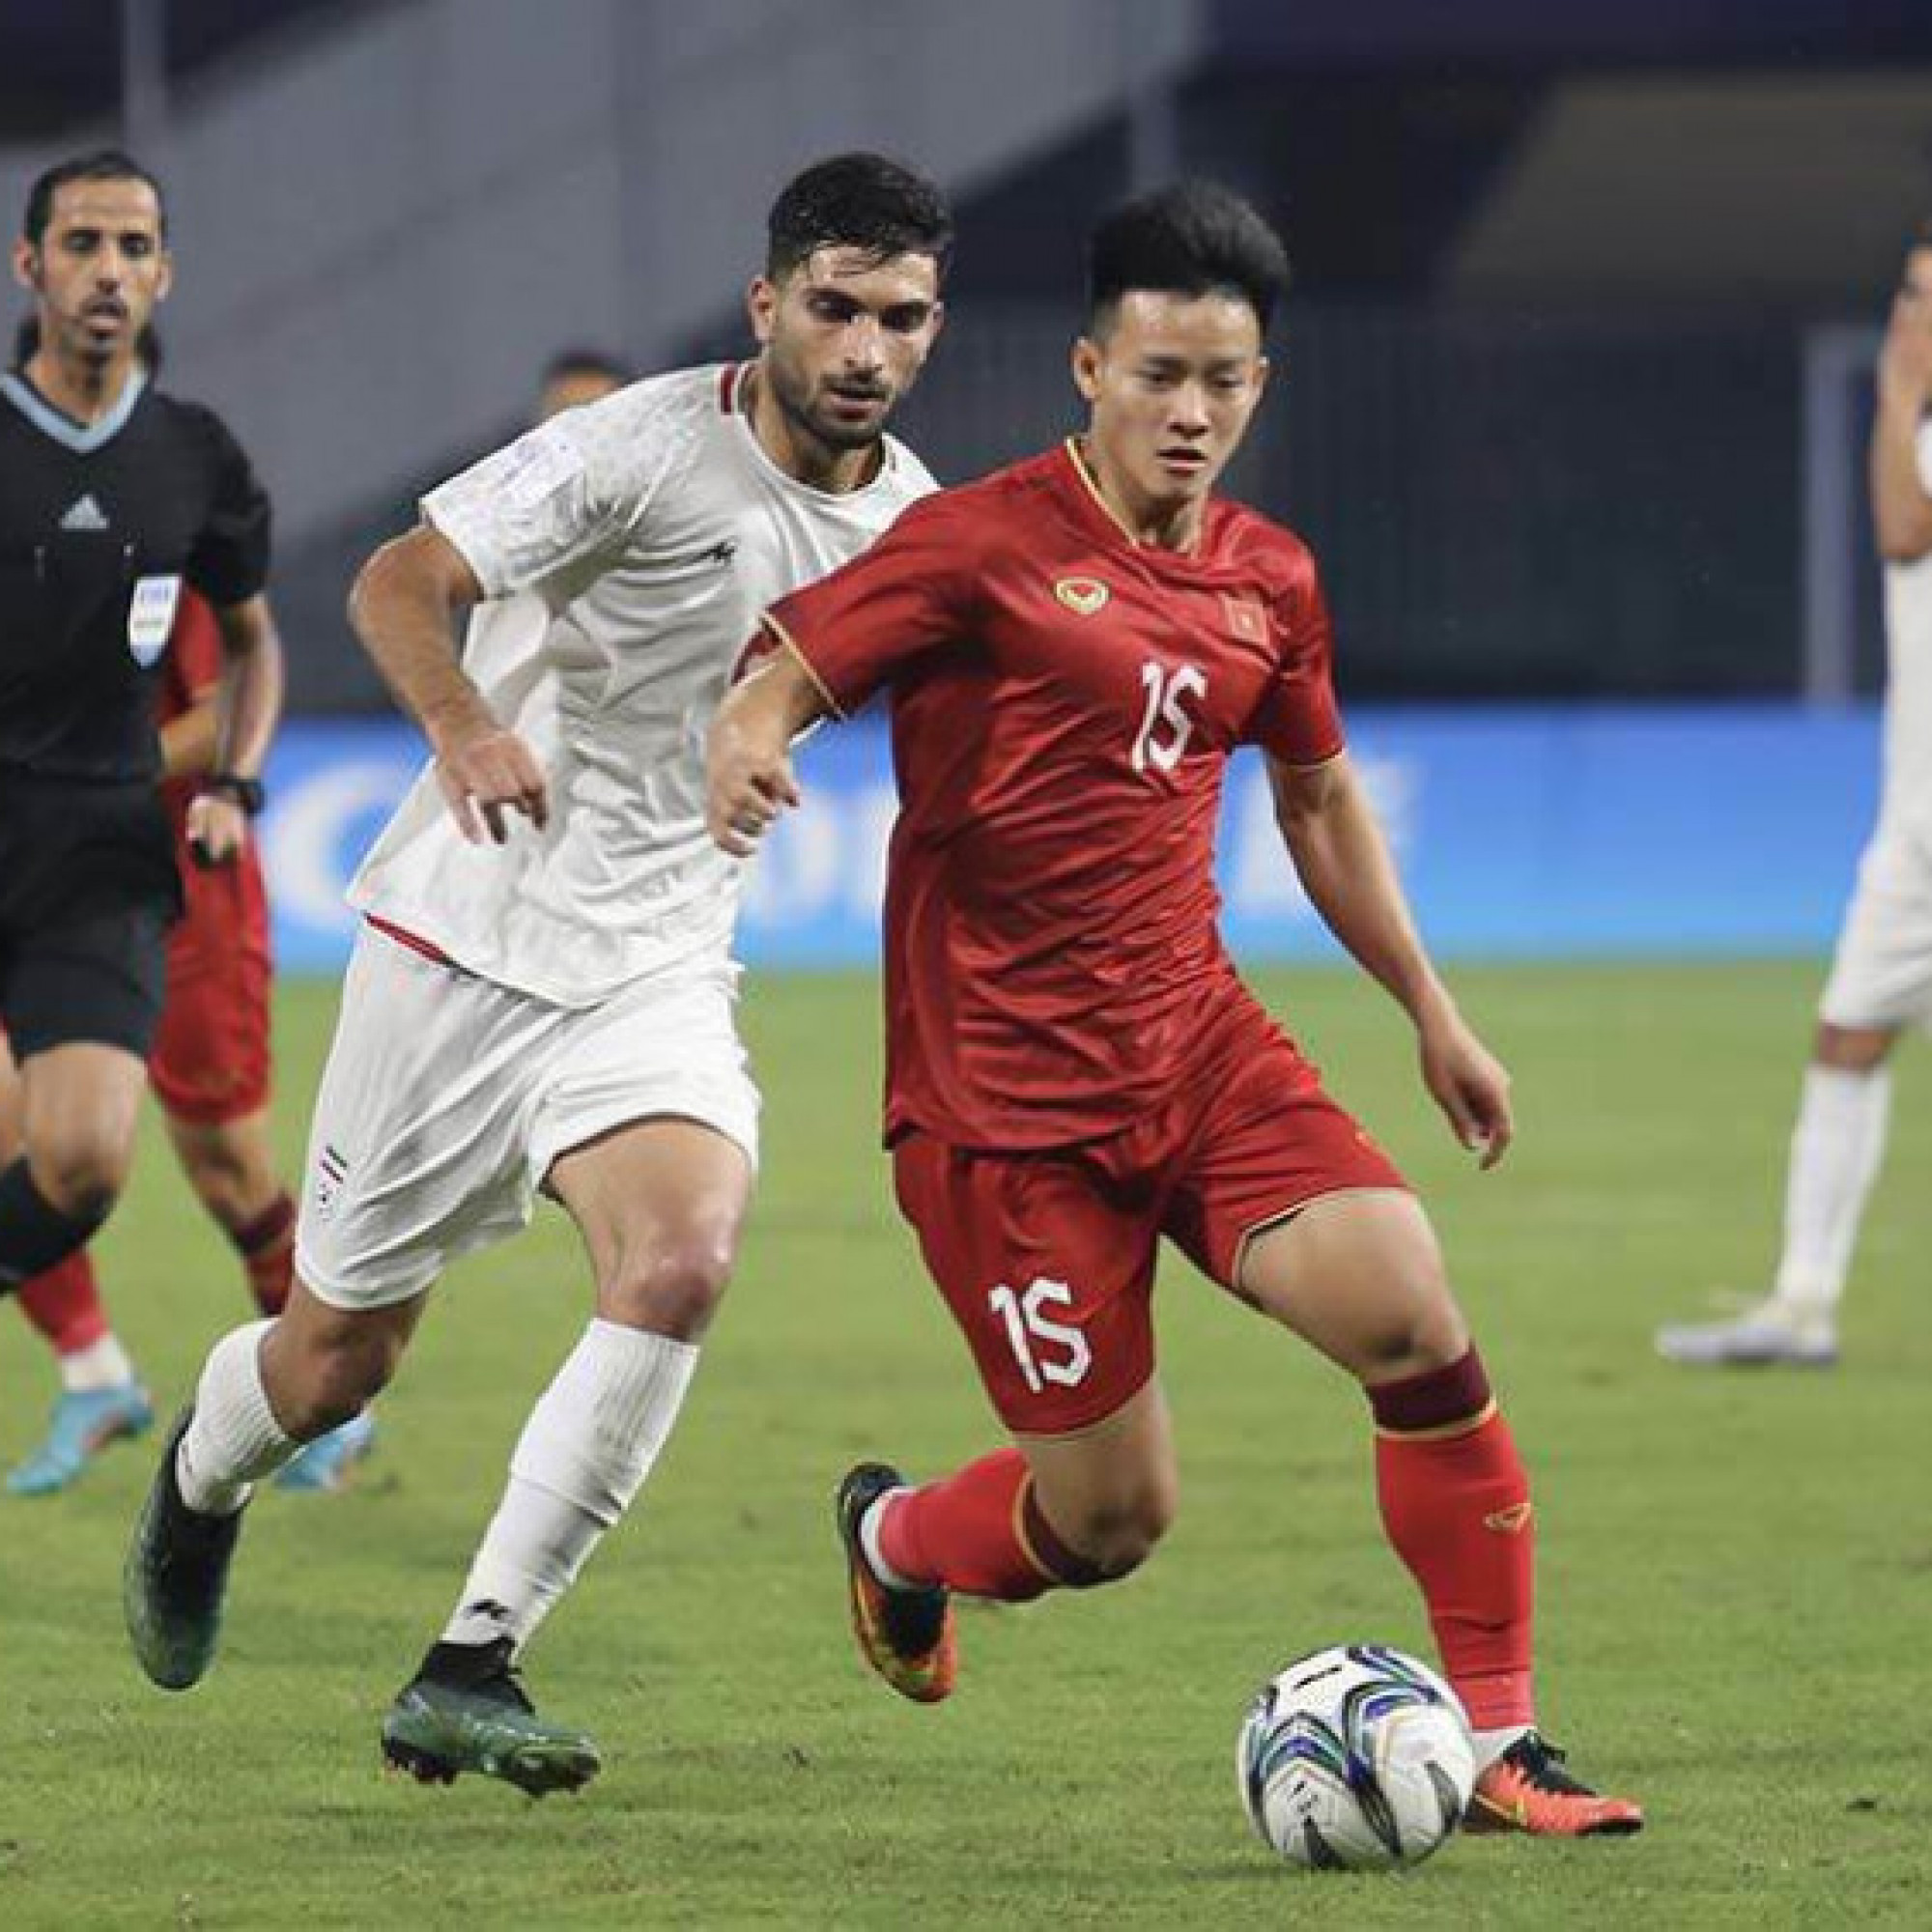 Video bóng đá U23 Việt Nam - U23 Iran: Khác biệt đẳng cấp, Văn Chuẩn cố gắng (ASIAD 19)